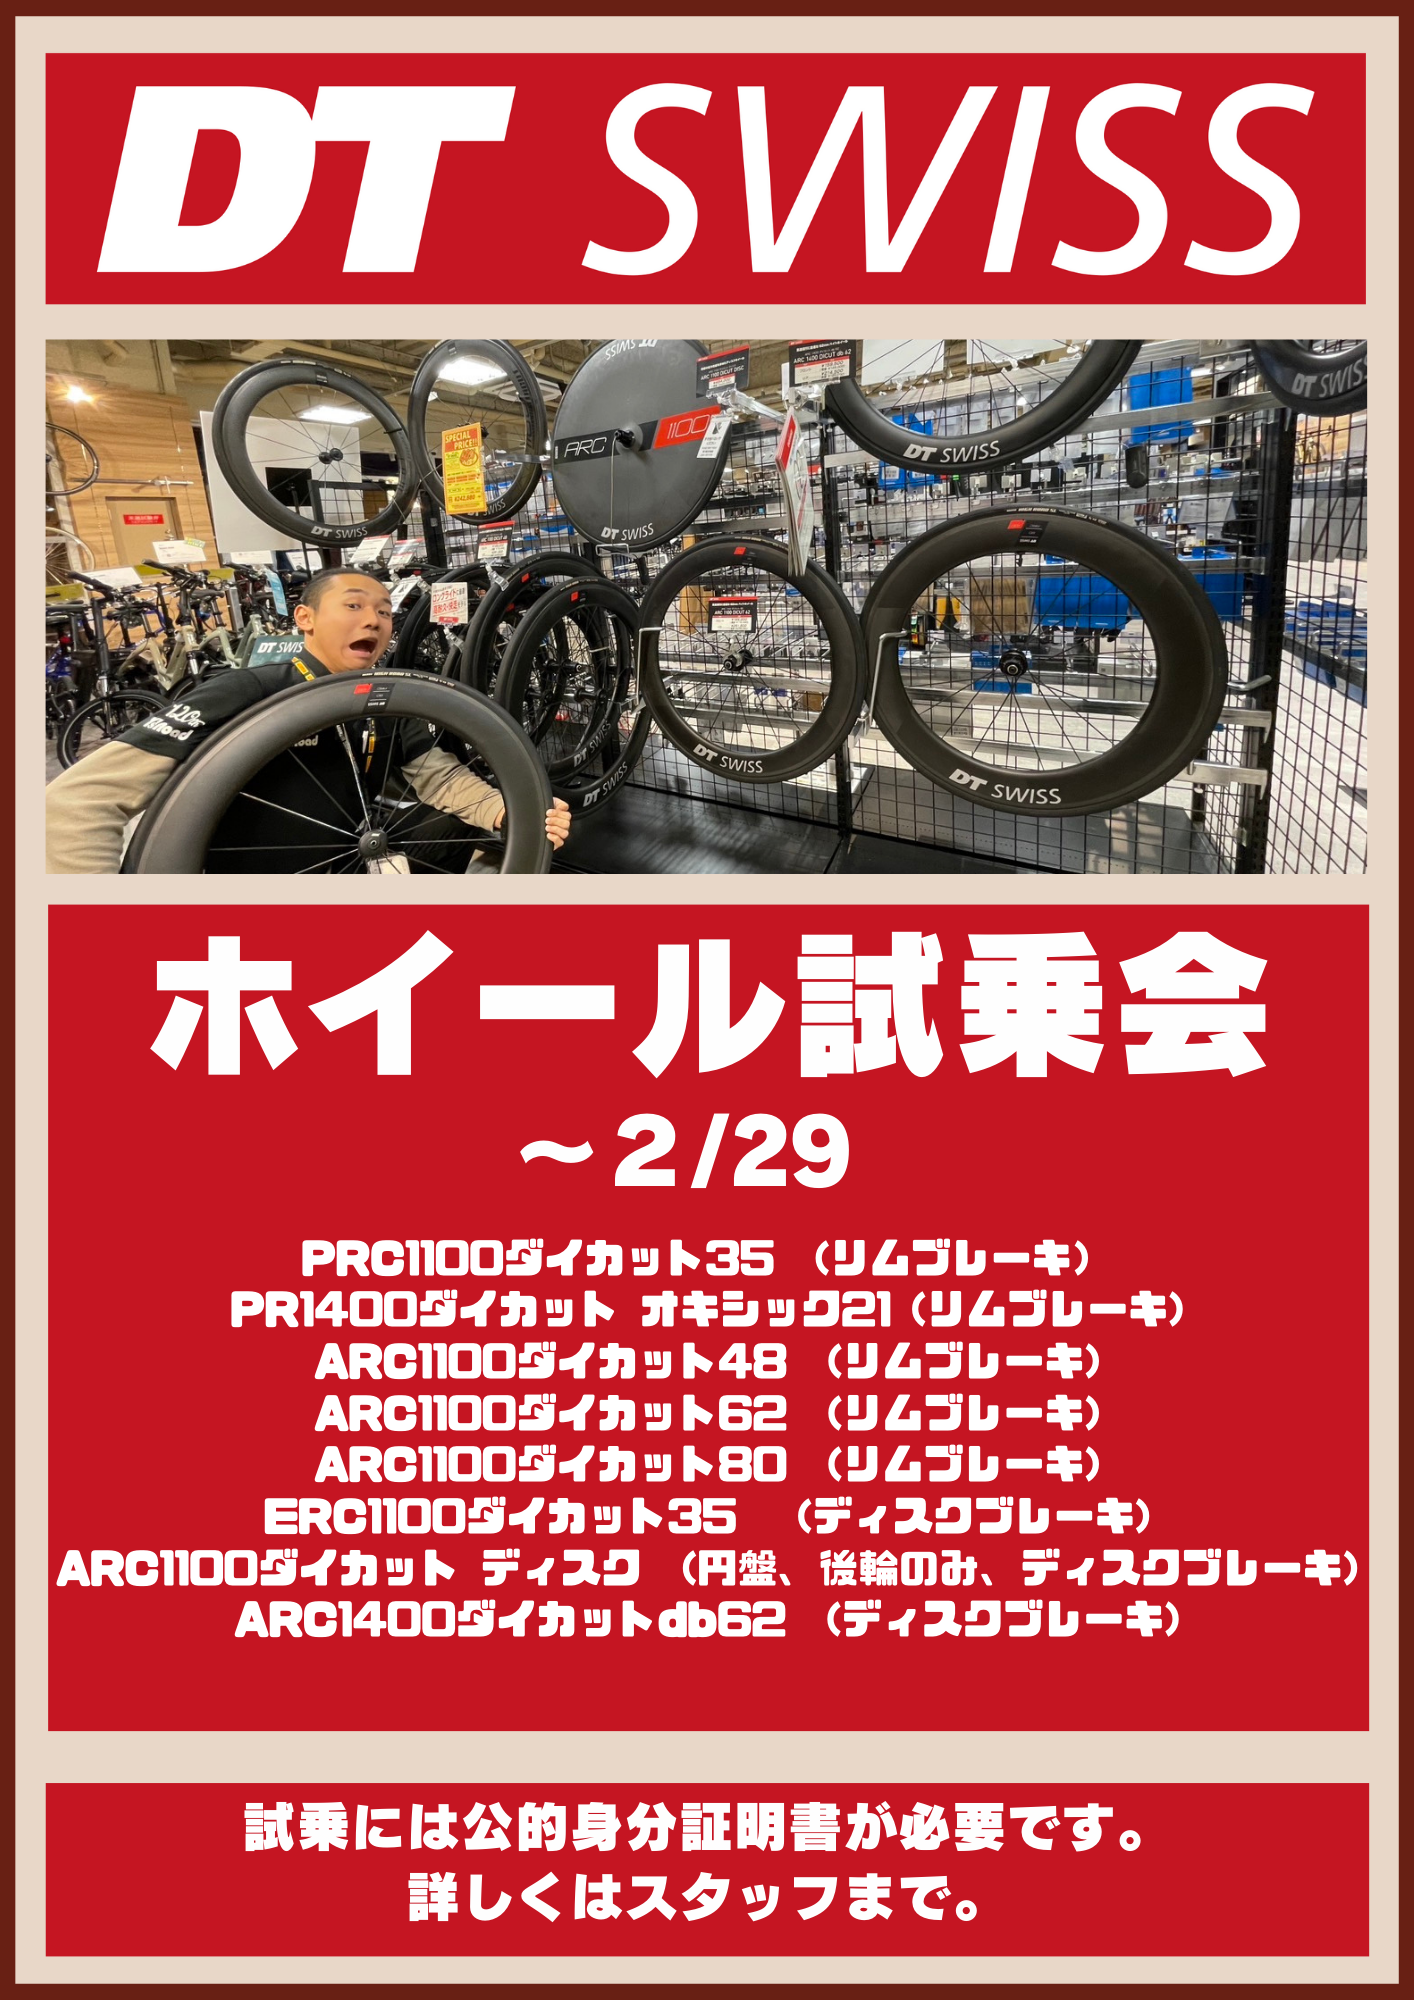 DT Swissのホイールがサンデーライドでも試せます！【DT Swiss×ワイズロード神戸】 | 神戸で自転車をお探しならY's Road 神戸店